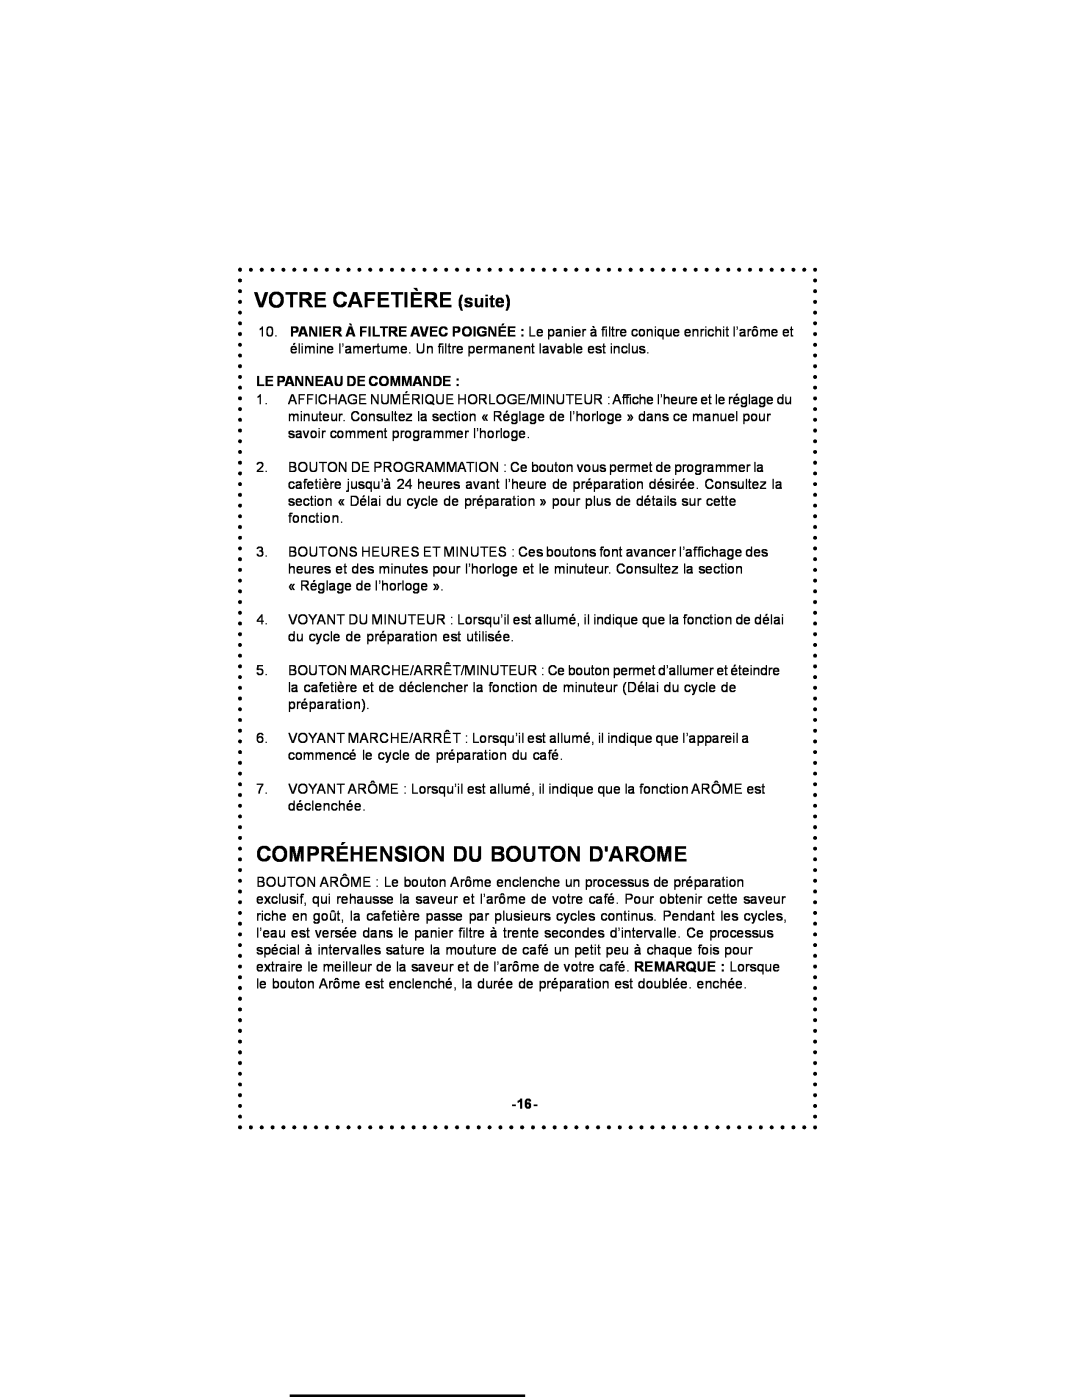 DeLonghi DC59TW instruction manual Compréhension Du Bouton Darome, VOTRE CAFETIÈRE suite, Le Panneau De Commande 